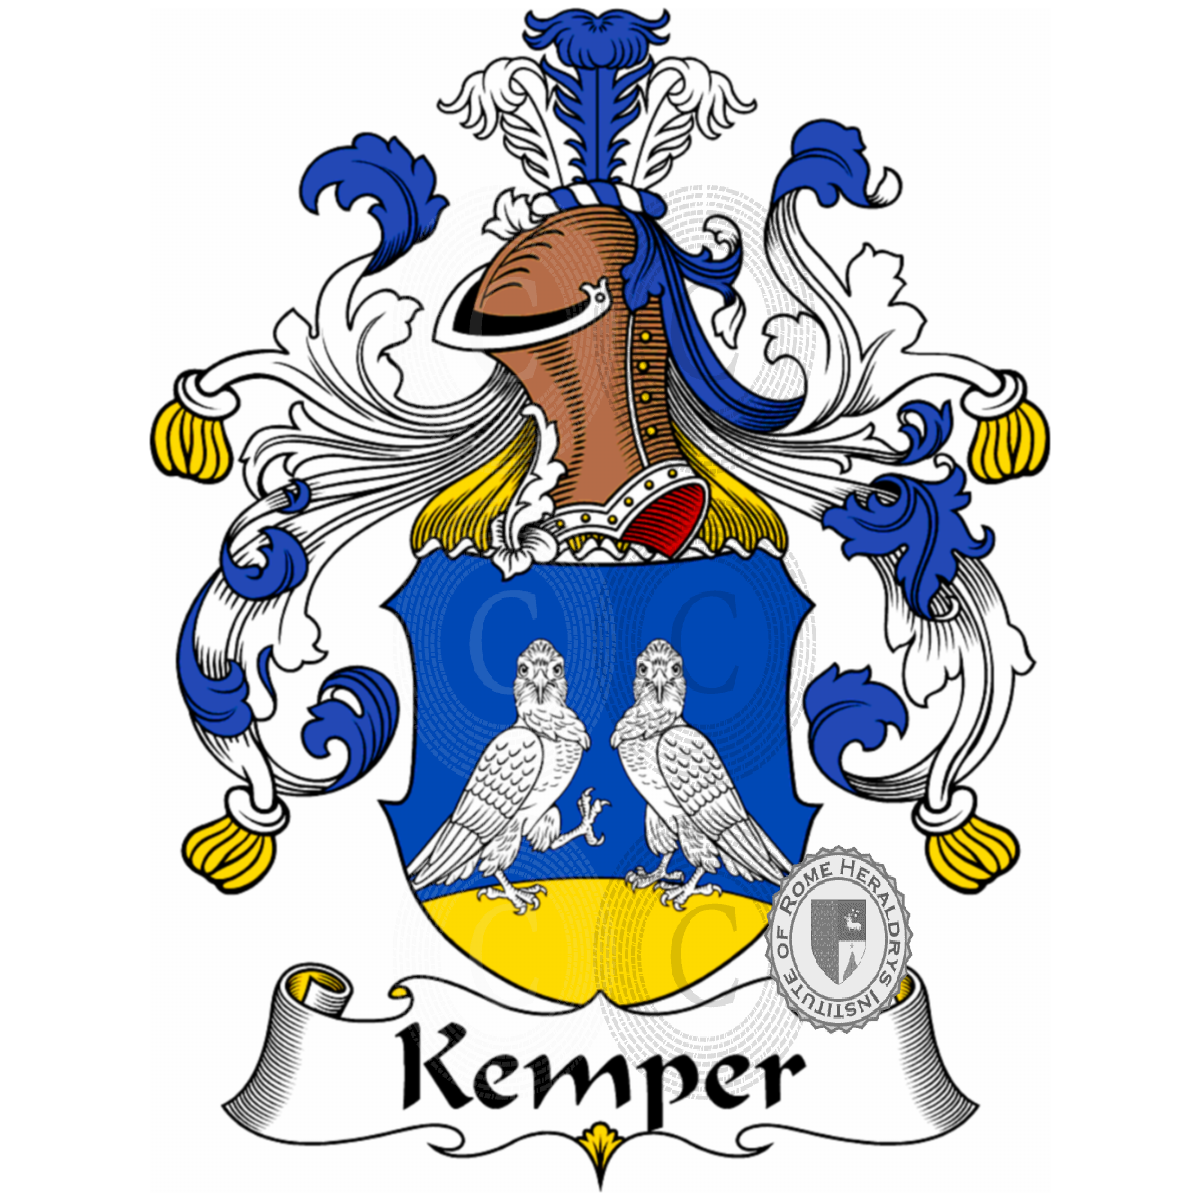 Stemma della famigliaKemper, de Bosh Kemper,Waterkemper